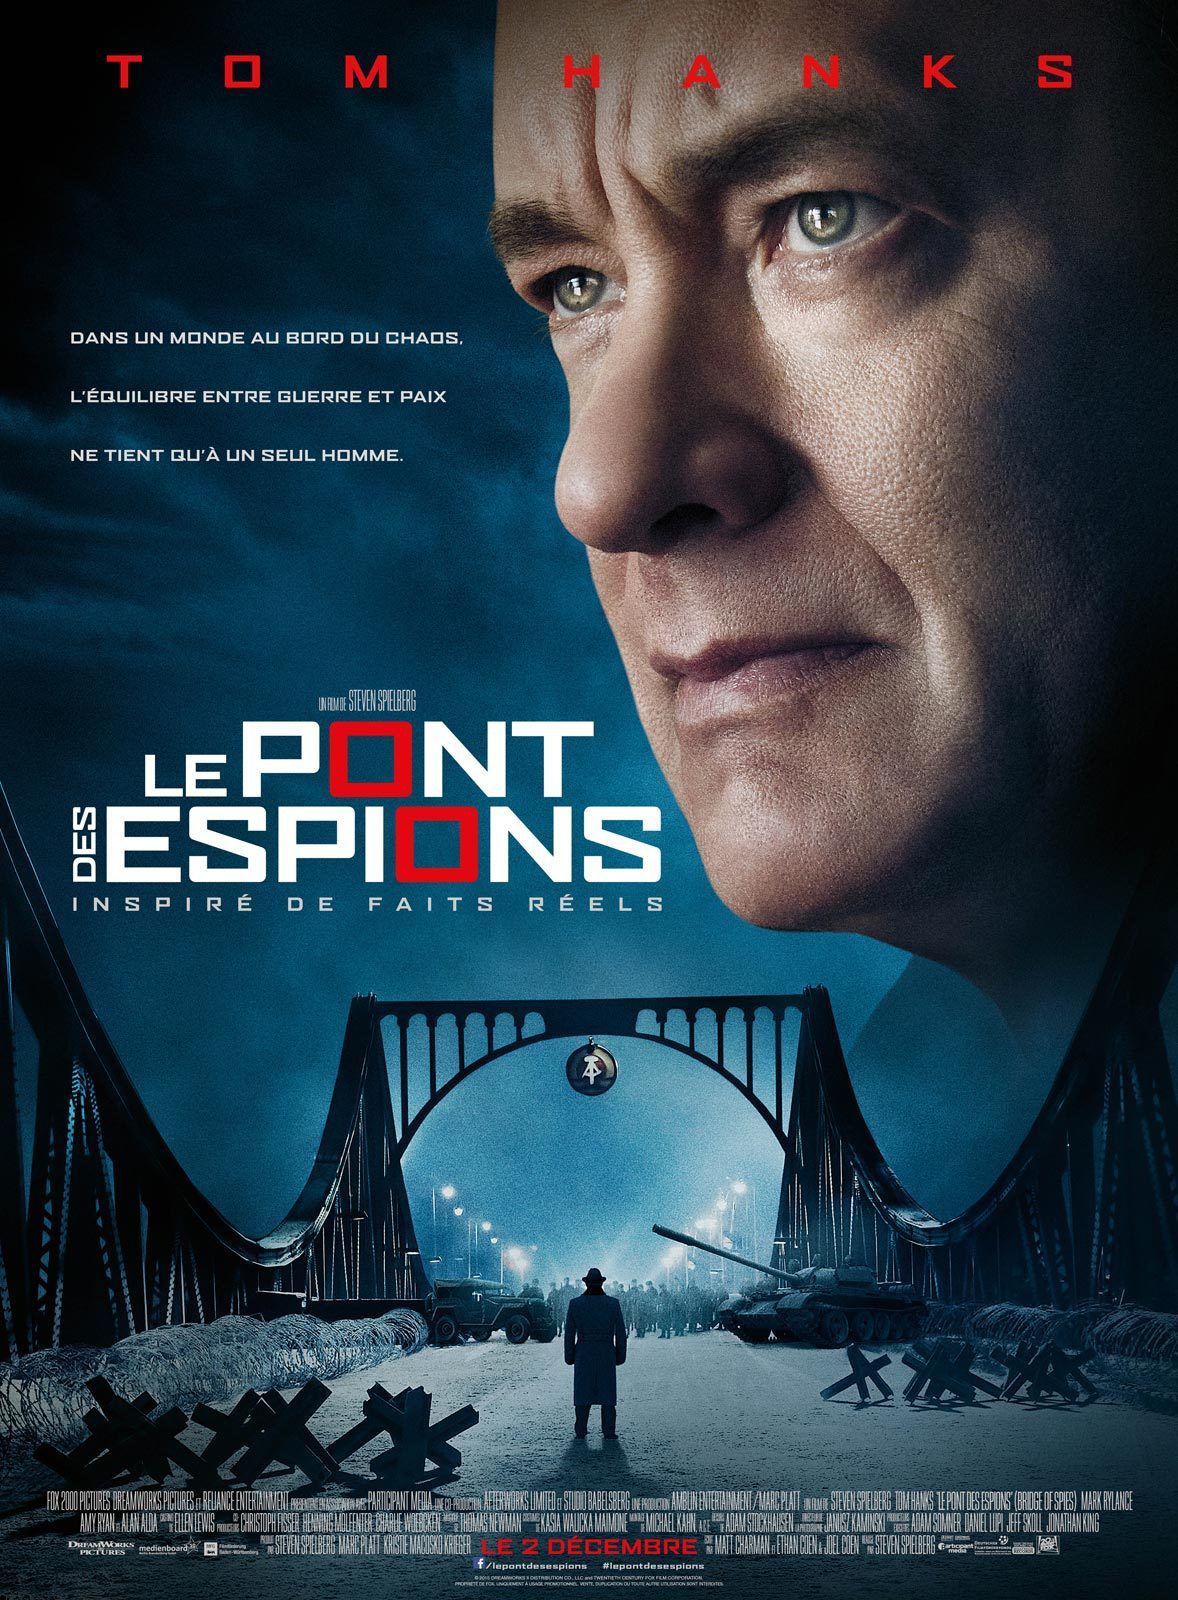 Le Pont des espions - Film (2015) streaming VF gratuit complet